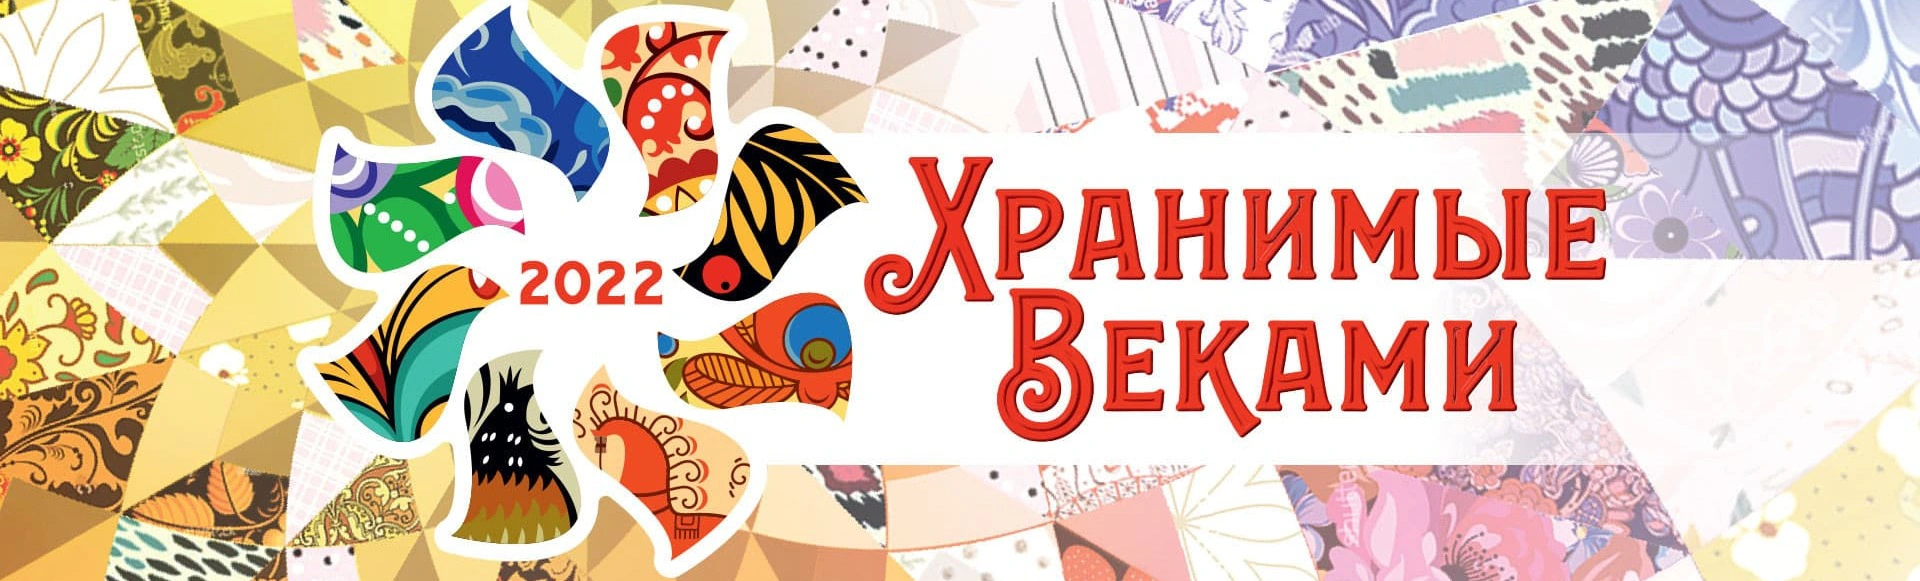 В Кремле пройдет фестиваль народных традиций